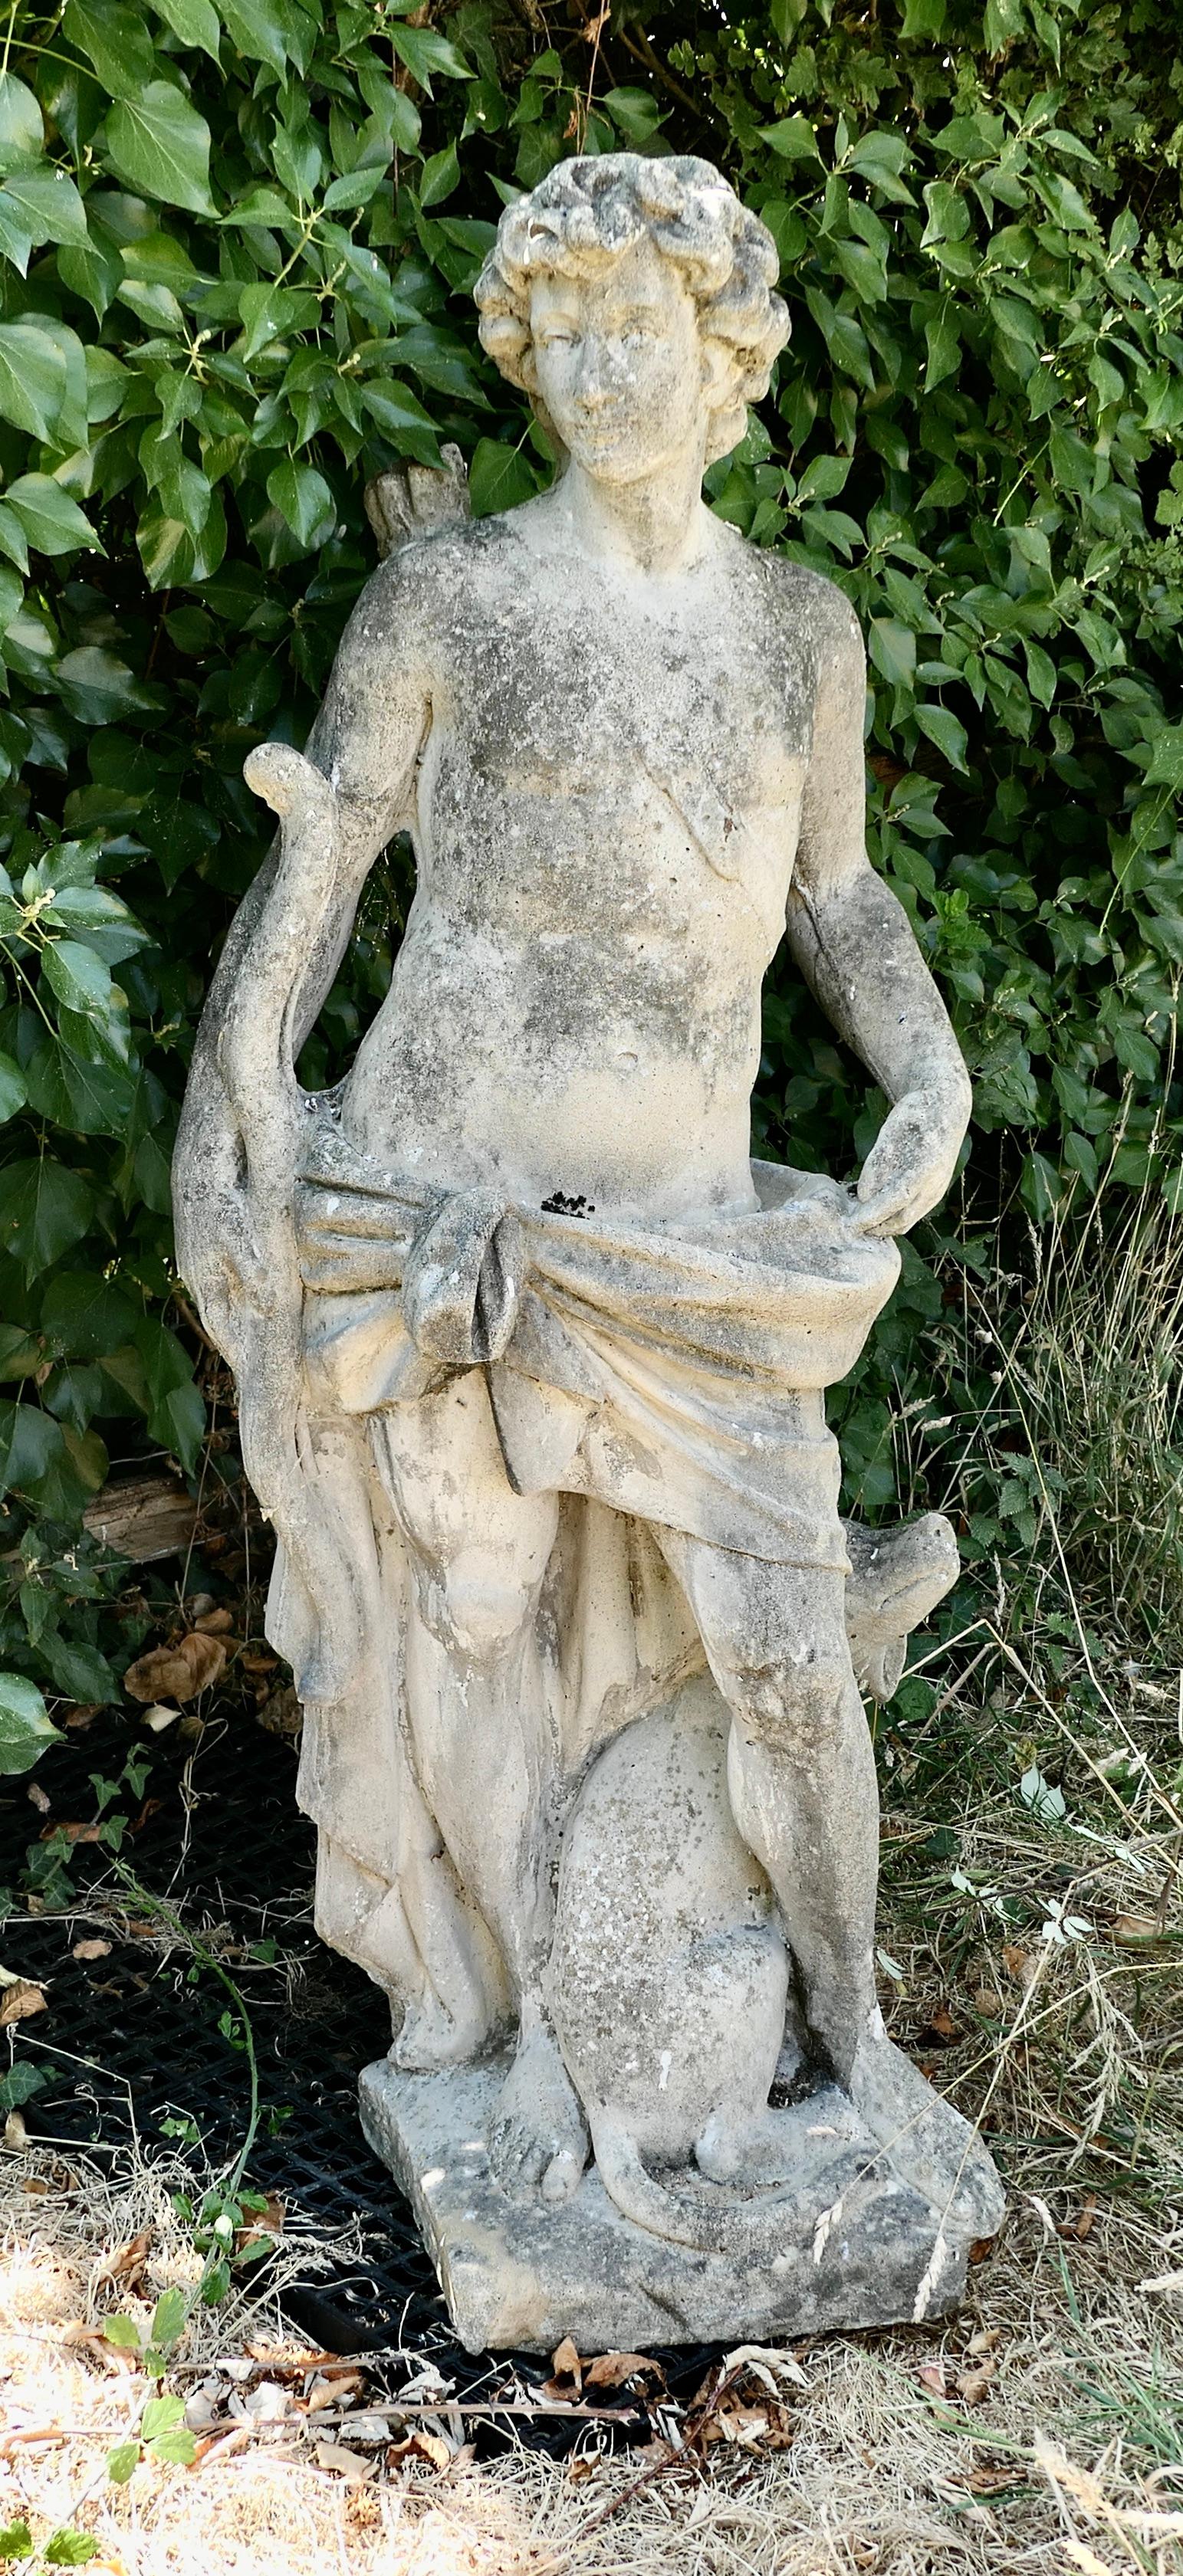 Statue française d'Apollon en pierre moulée

Une grande statue en pierre reconstituée d'Apollon le chasseur avec un arc et des flèches, et bien sûr son chien fidèle.

Il s'agit d'une statue classique d'époque, datant de la première moitié du 20e